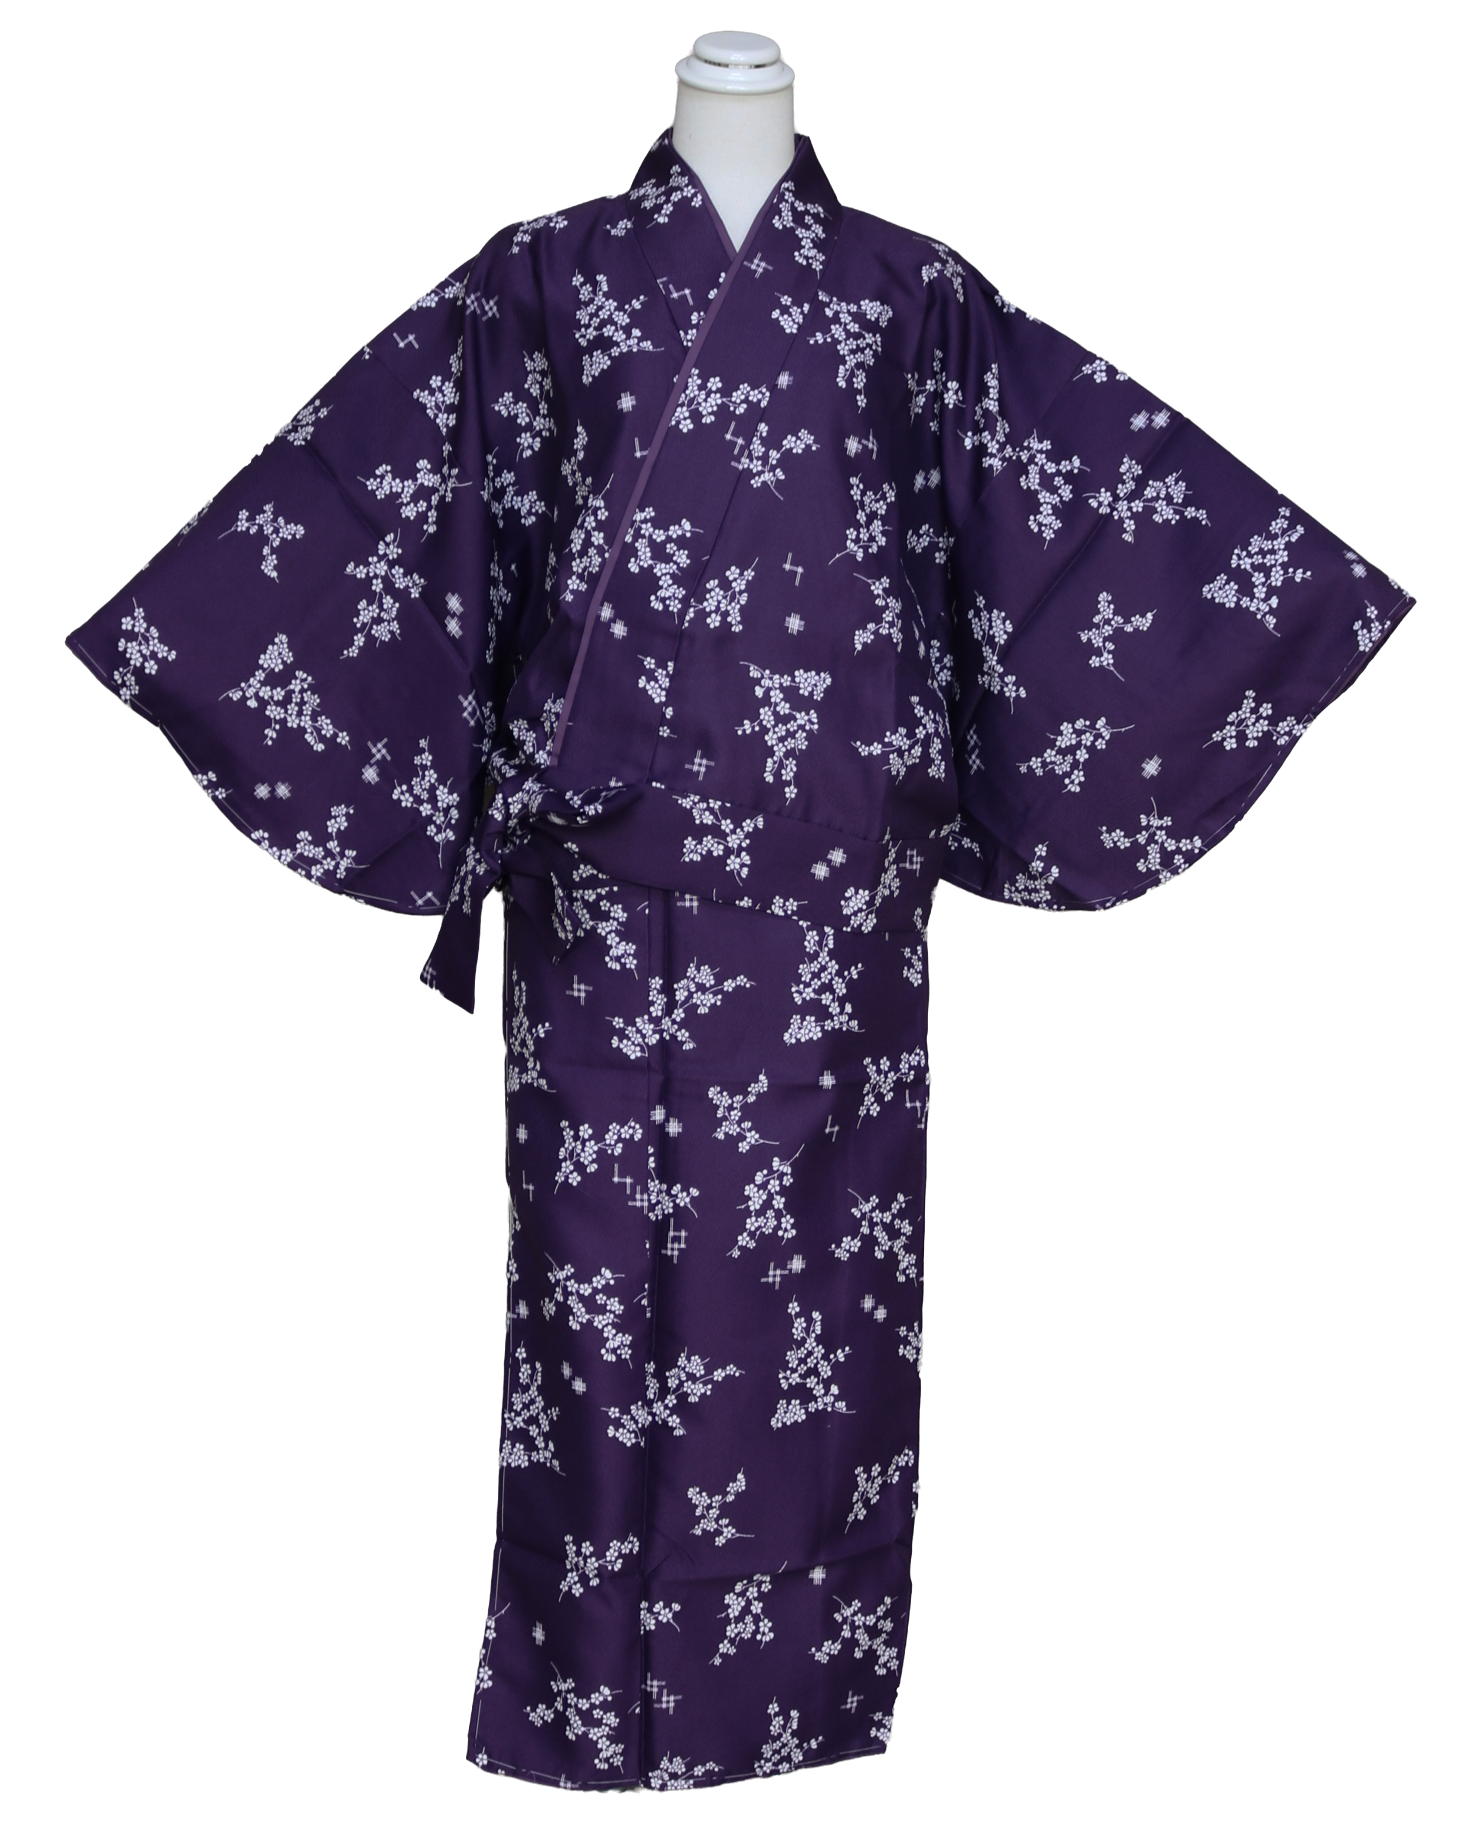 マドンナ新柄二部式袷着物 K4676-17M 送料無料 サイズM 紫色の二部式きもの 帯不要のきもの 小紋柄の洗える着物